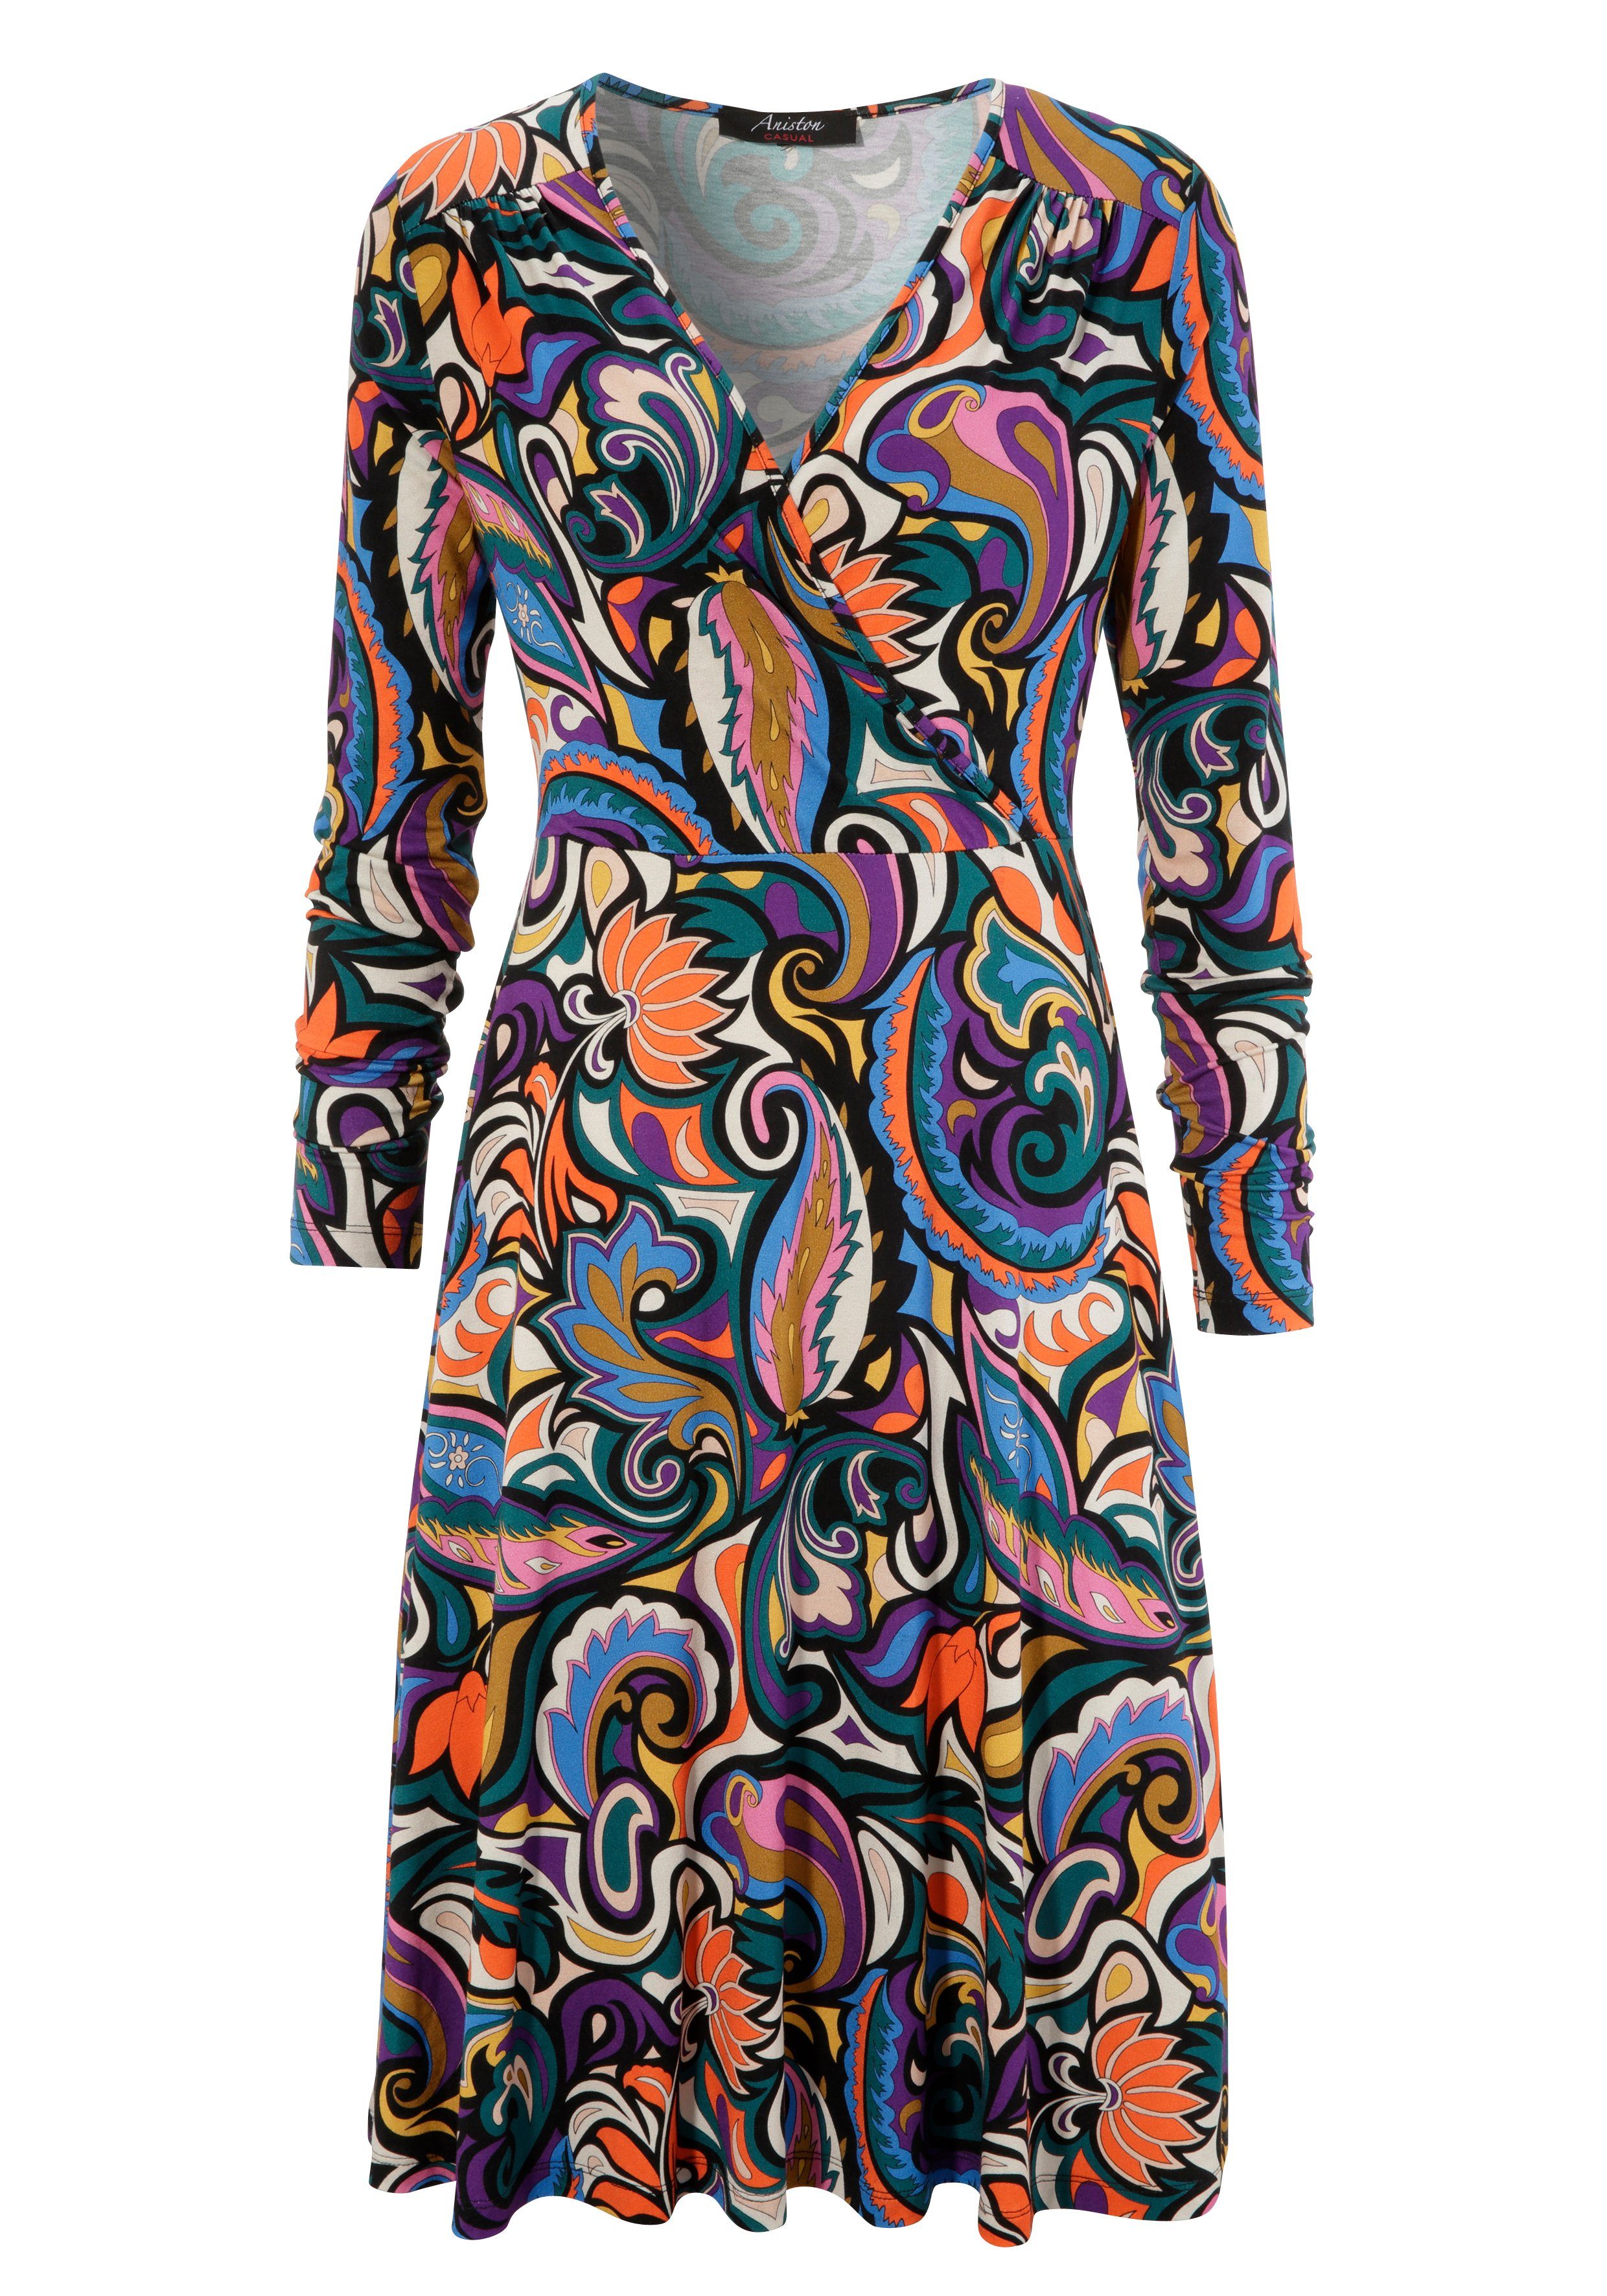 Blumen- und Jerseykleid farbenfrohem, CASUAL mit Aniston Paisley-Druck graphischen